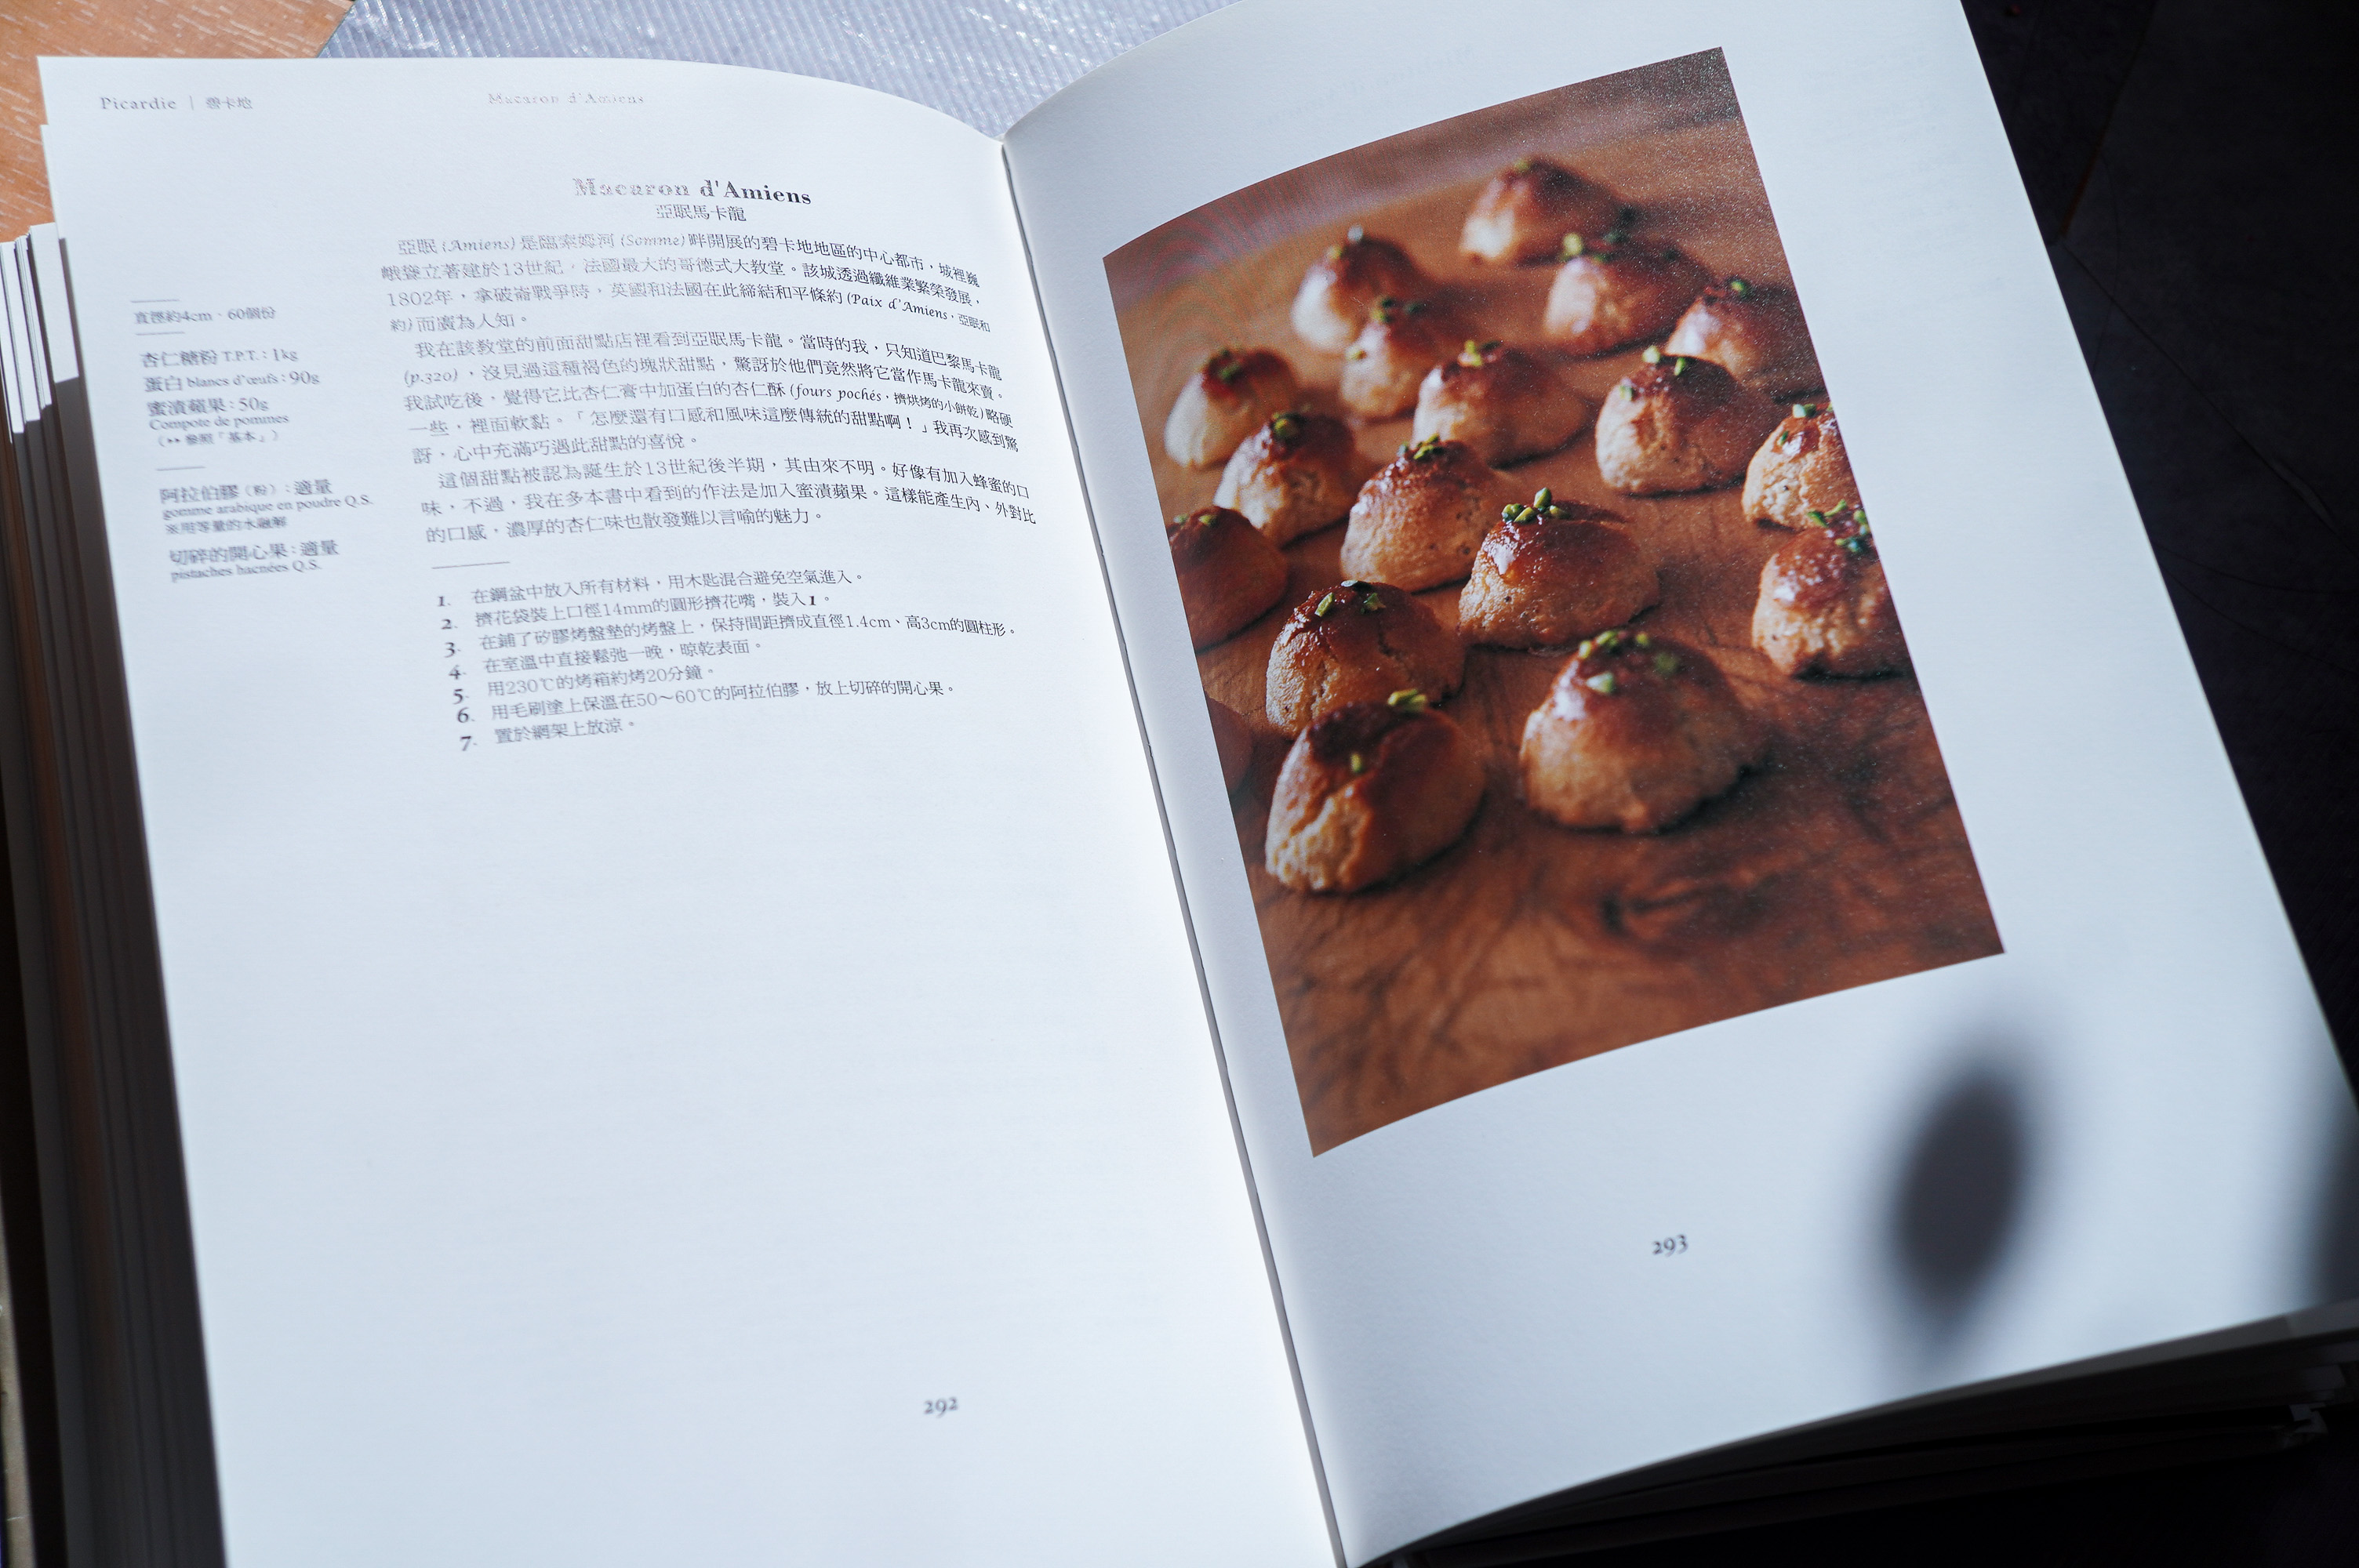 日本知名甜點主廚河田勝彥在其著作《河田勝彥的法國鄉土甜點之旅》中收錄了包括亞眠馬卡龍、南錫馬卡龍等五種不同特色的馬卡龍。（圖片提供／Ying C. 陳穎）